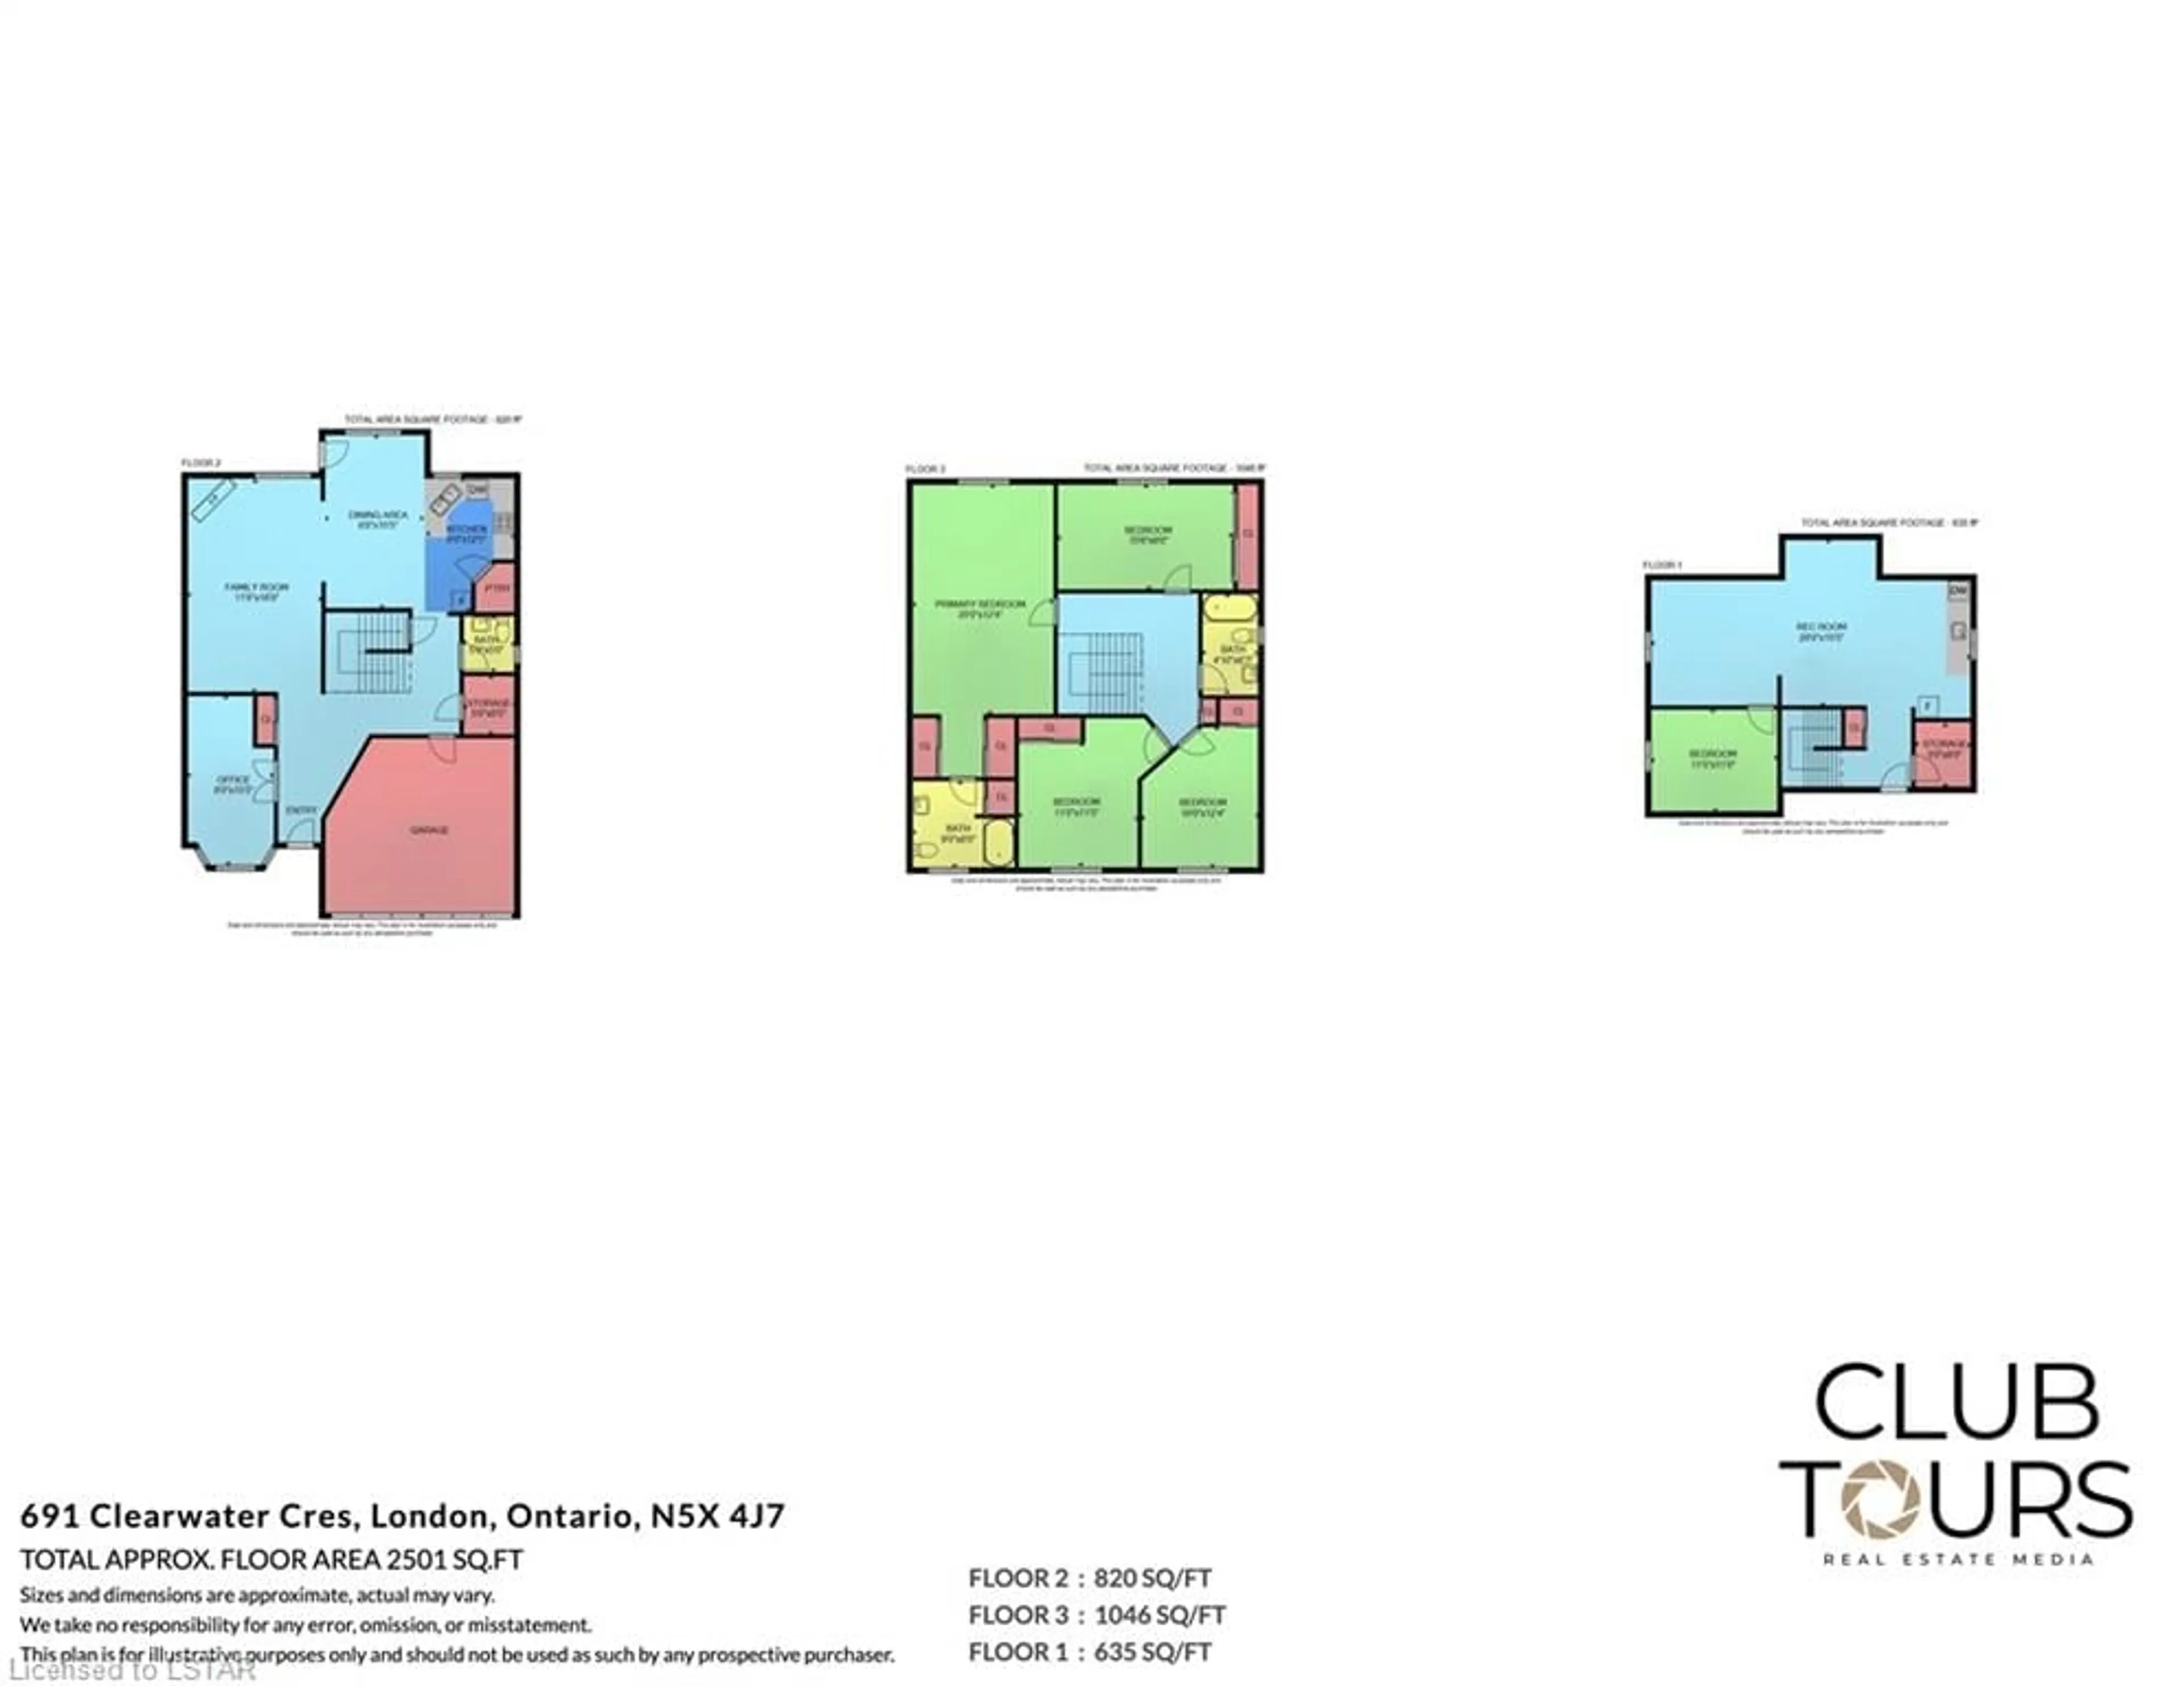 Floor plan for 691 Clearwater Cres, London Ontario N5X 4J7